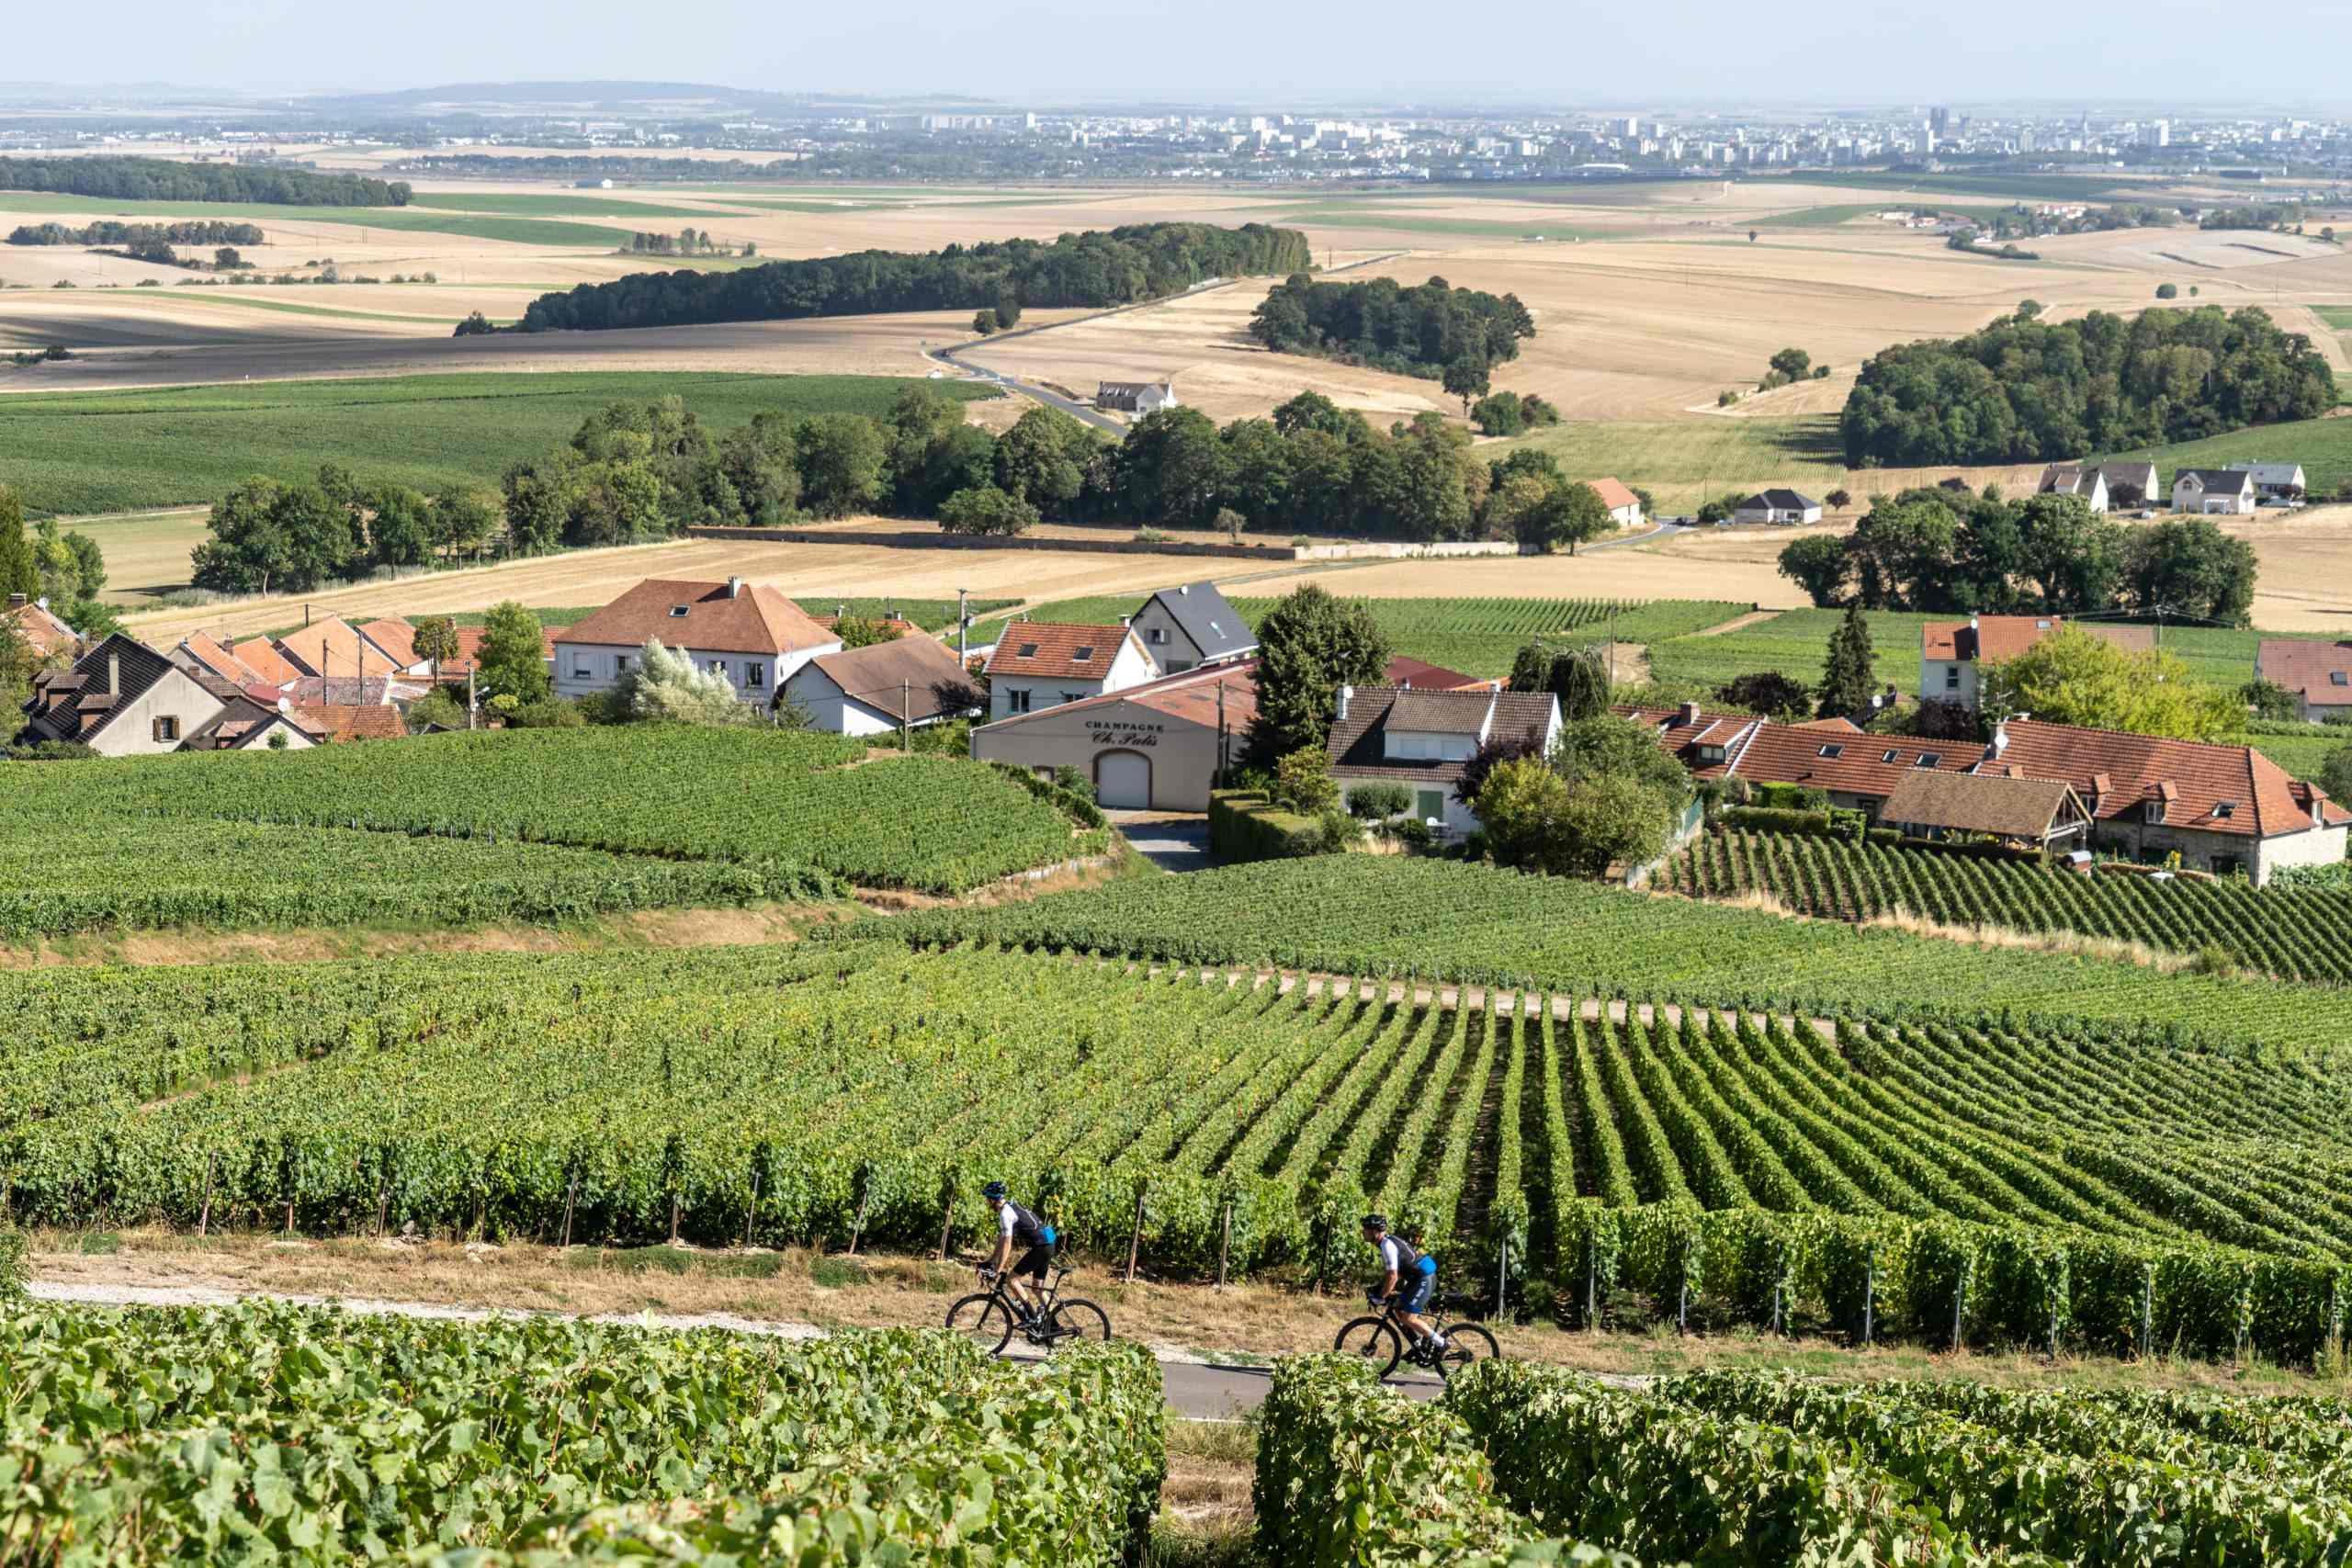 Fietsvakantie wielrenners fietsen door champagnevelden bij Reims op weg naar Parijs